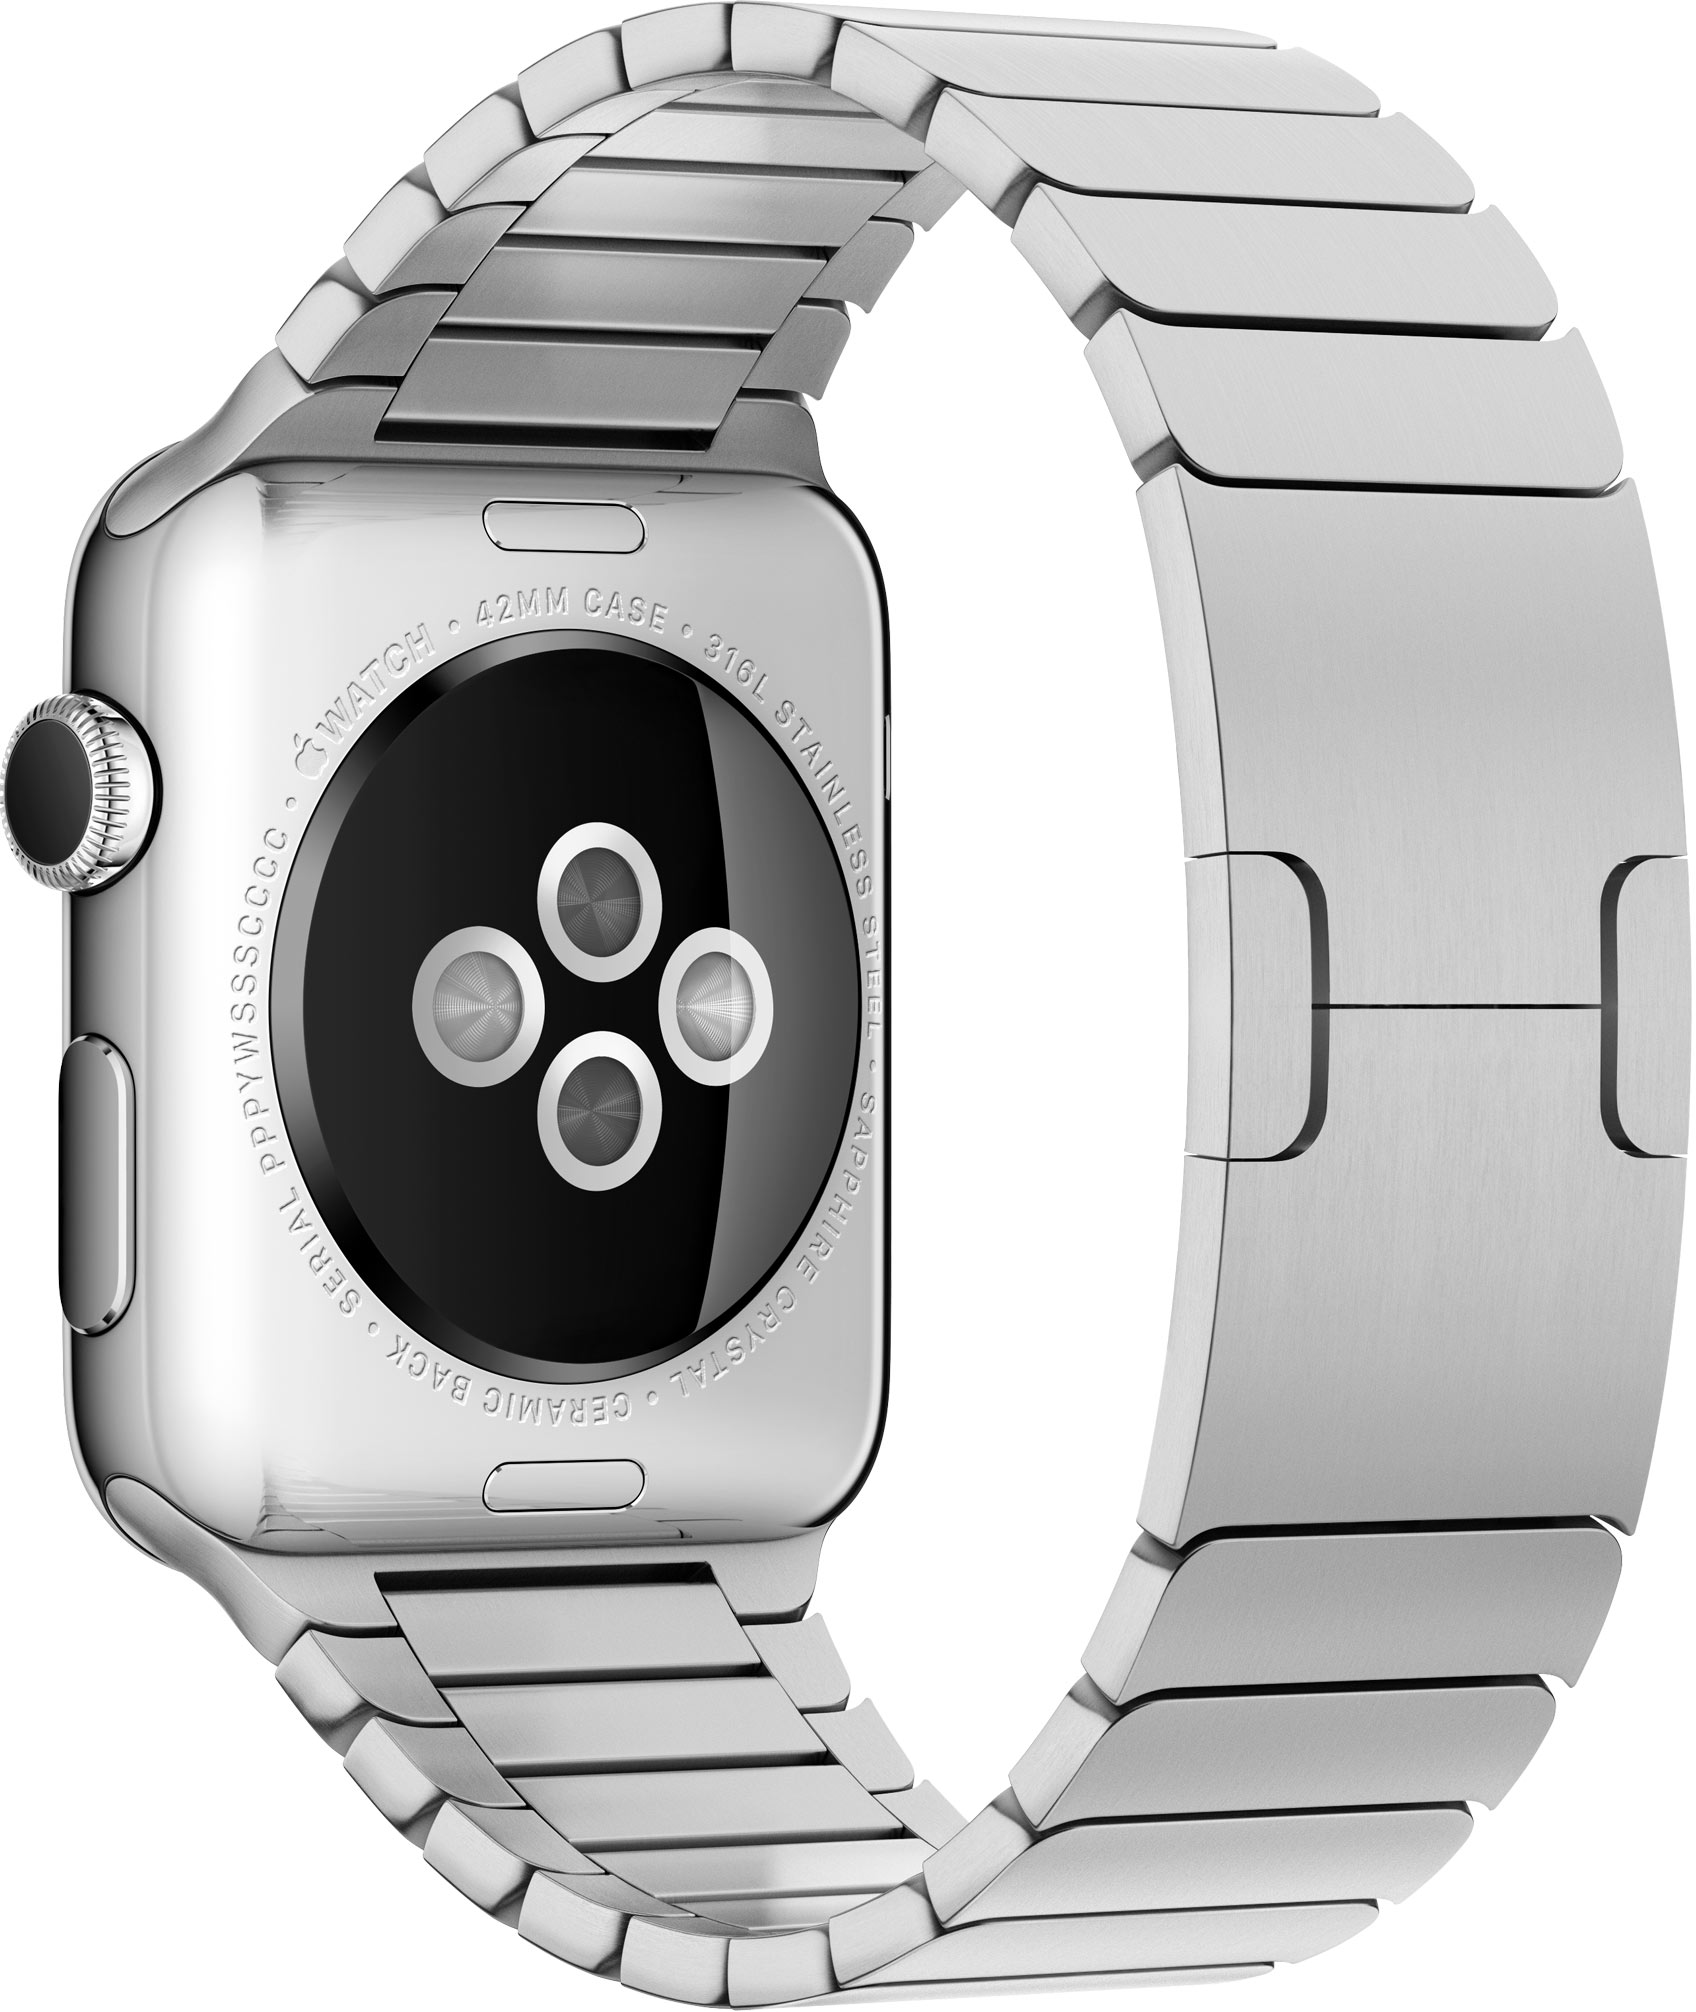 Apple Watch Heart Rate Sensor